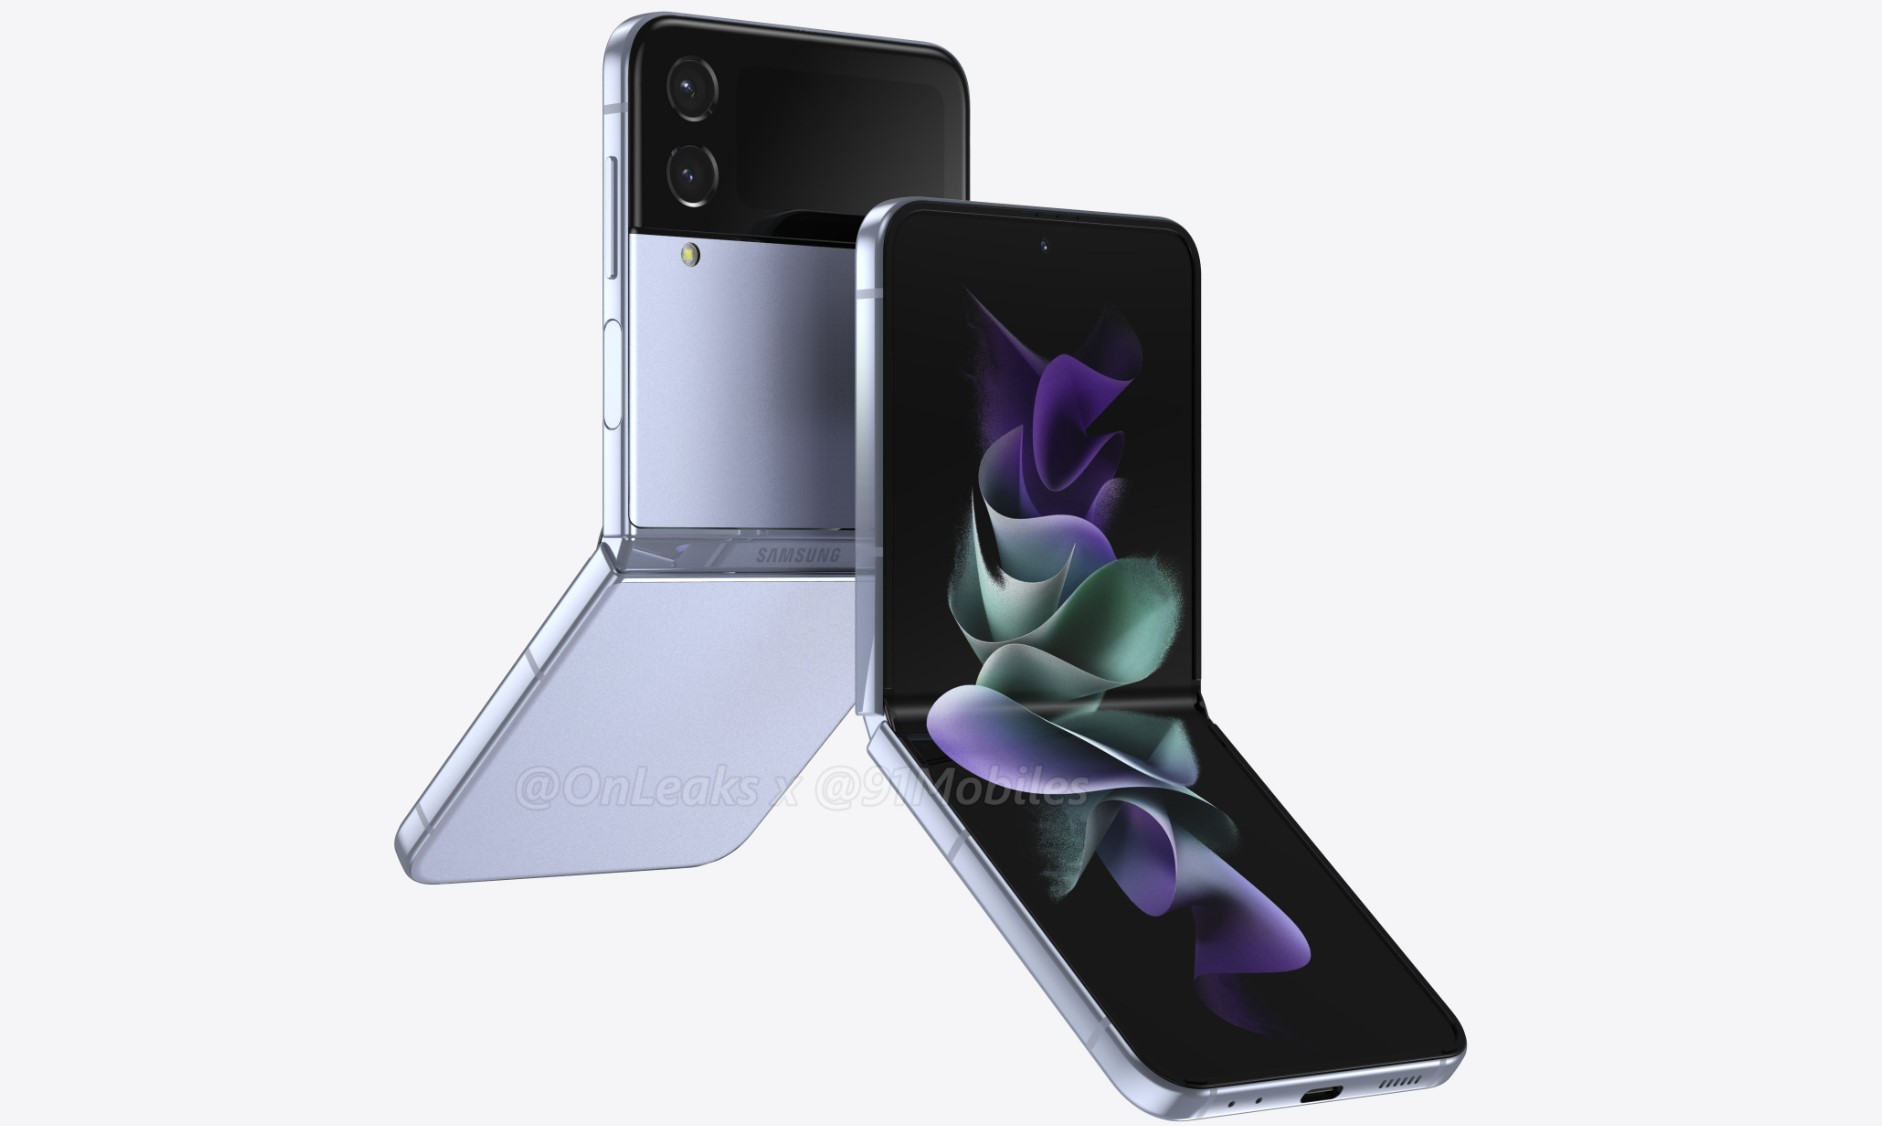 Folding Samsung Galaxy Z Flip 4 will get a smaller screen crease